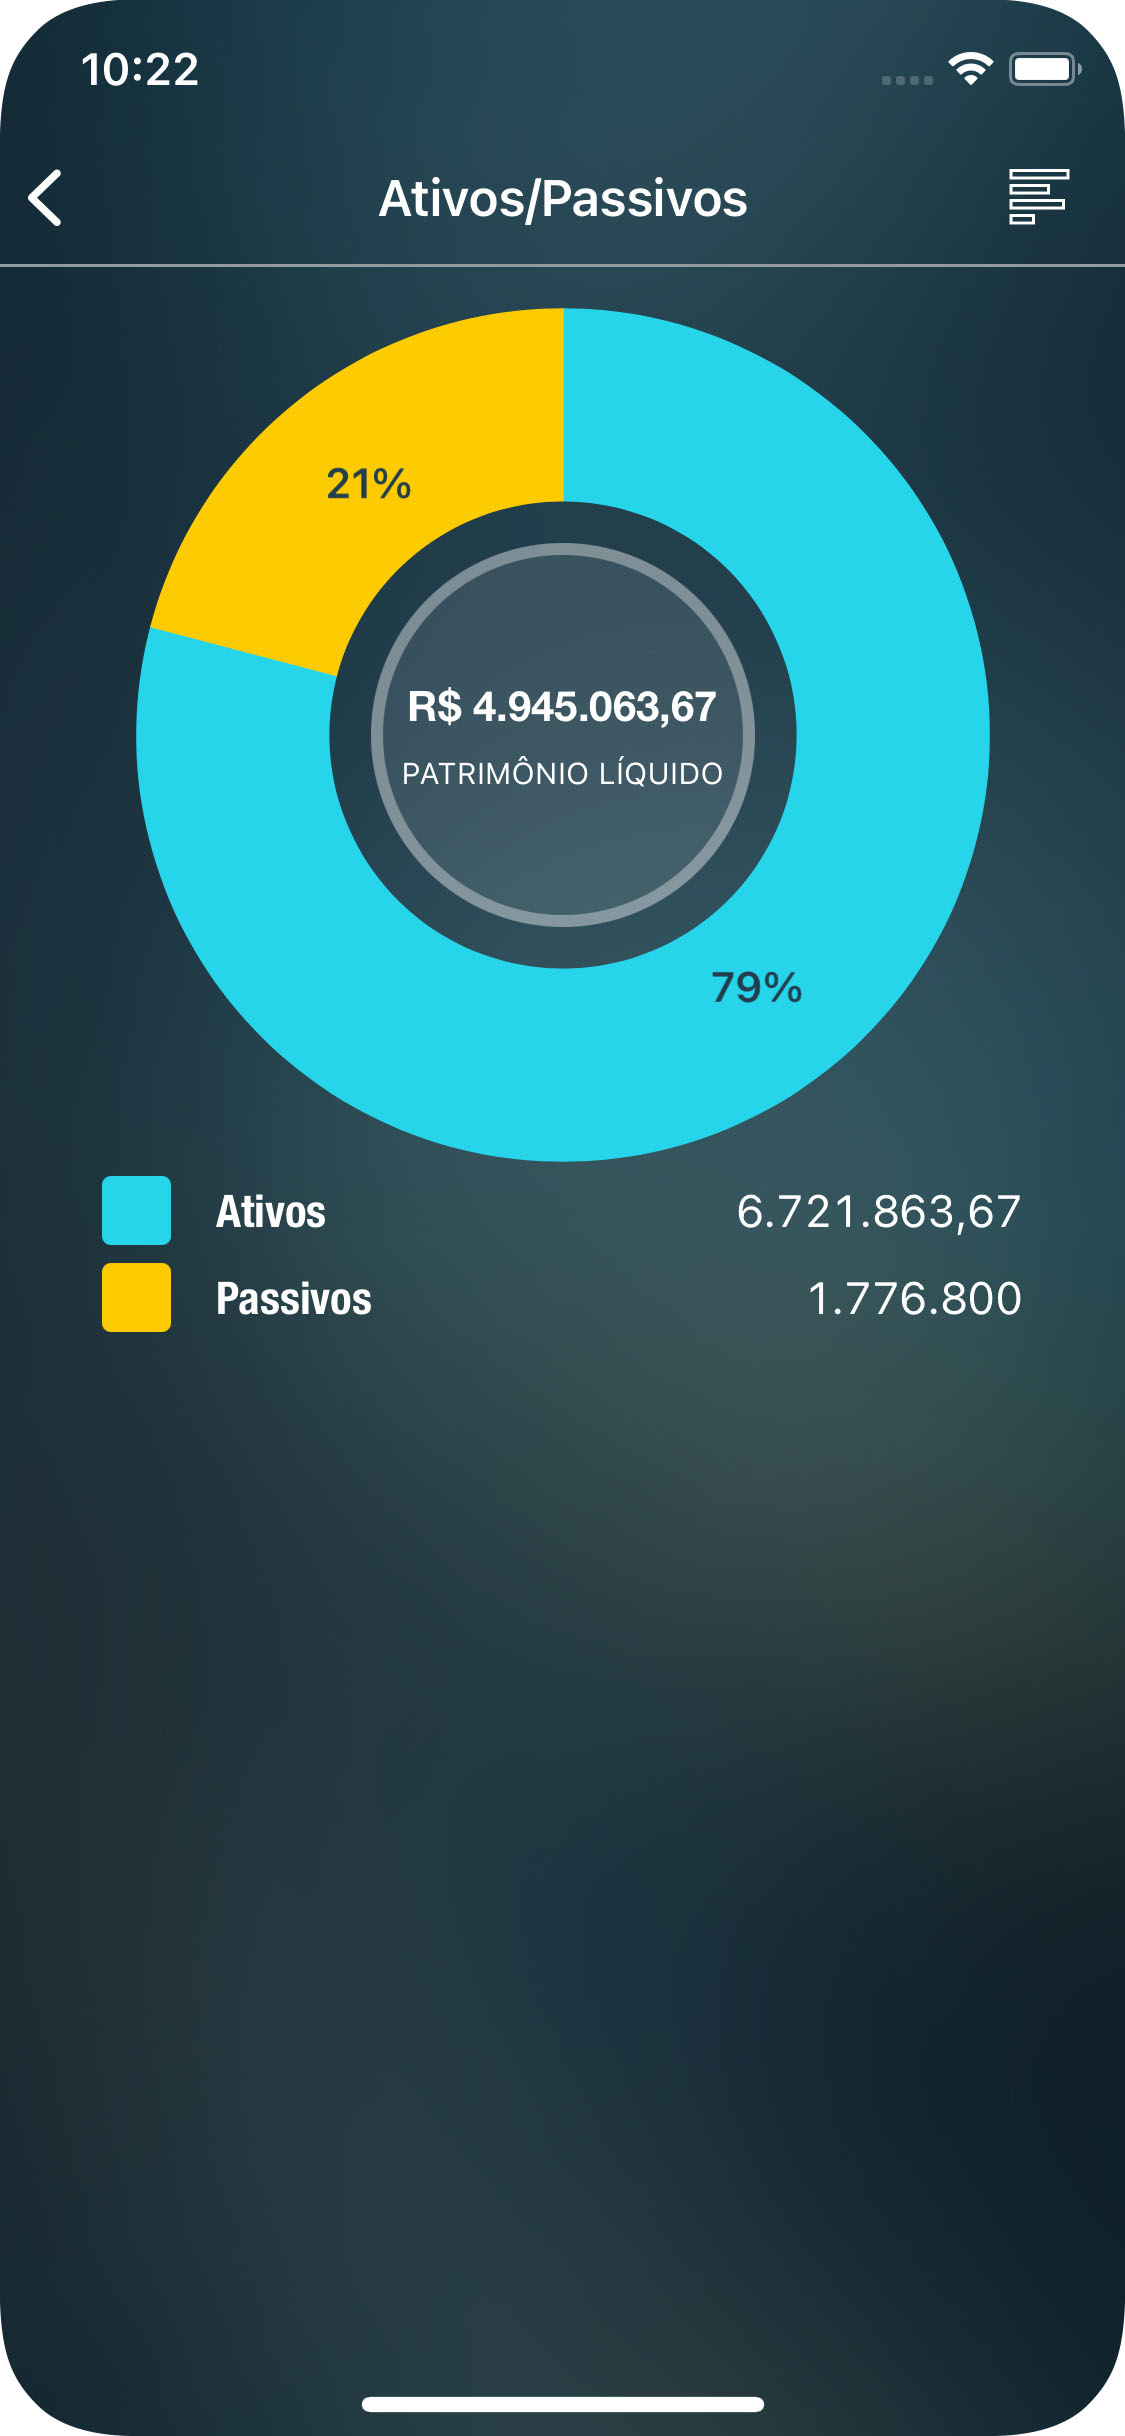 Money Pro - Relatório de Ativos/passivos - iPhone